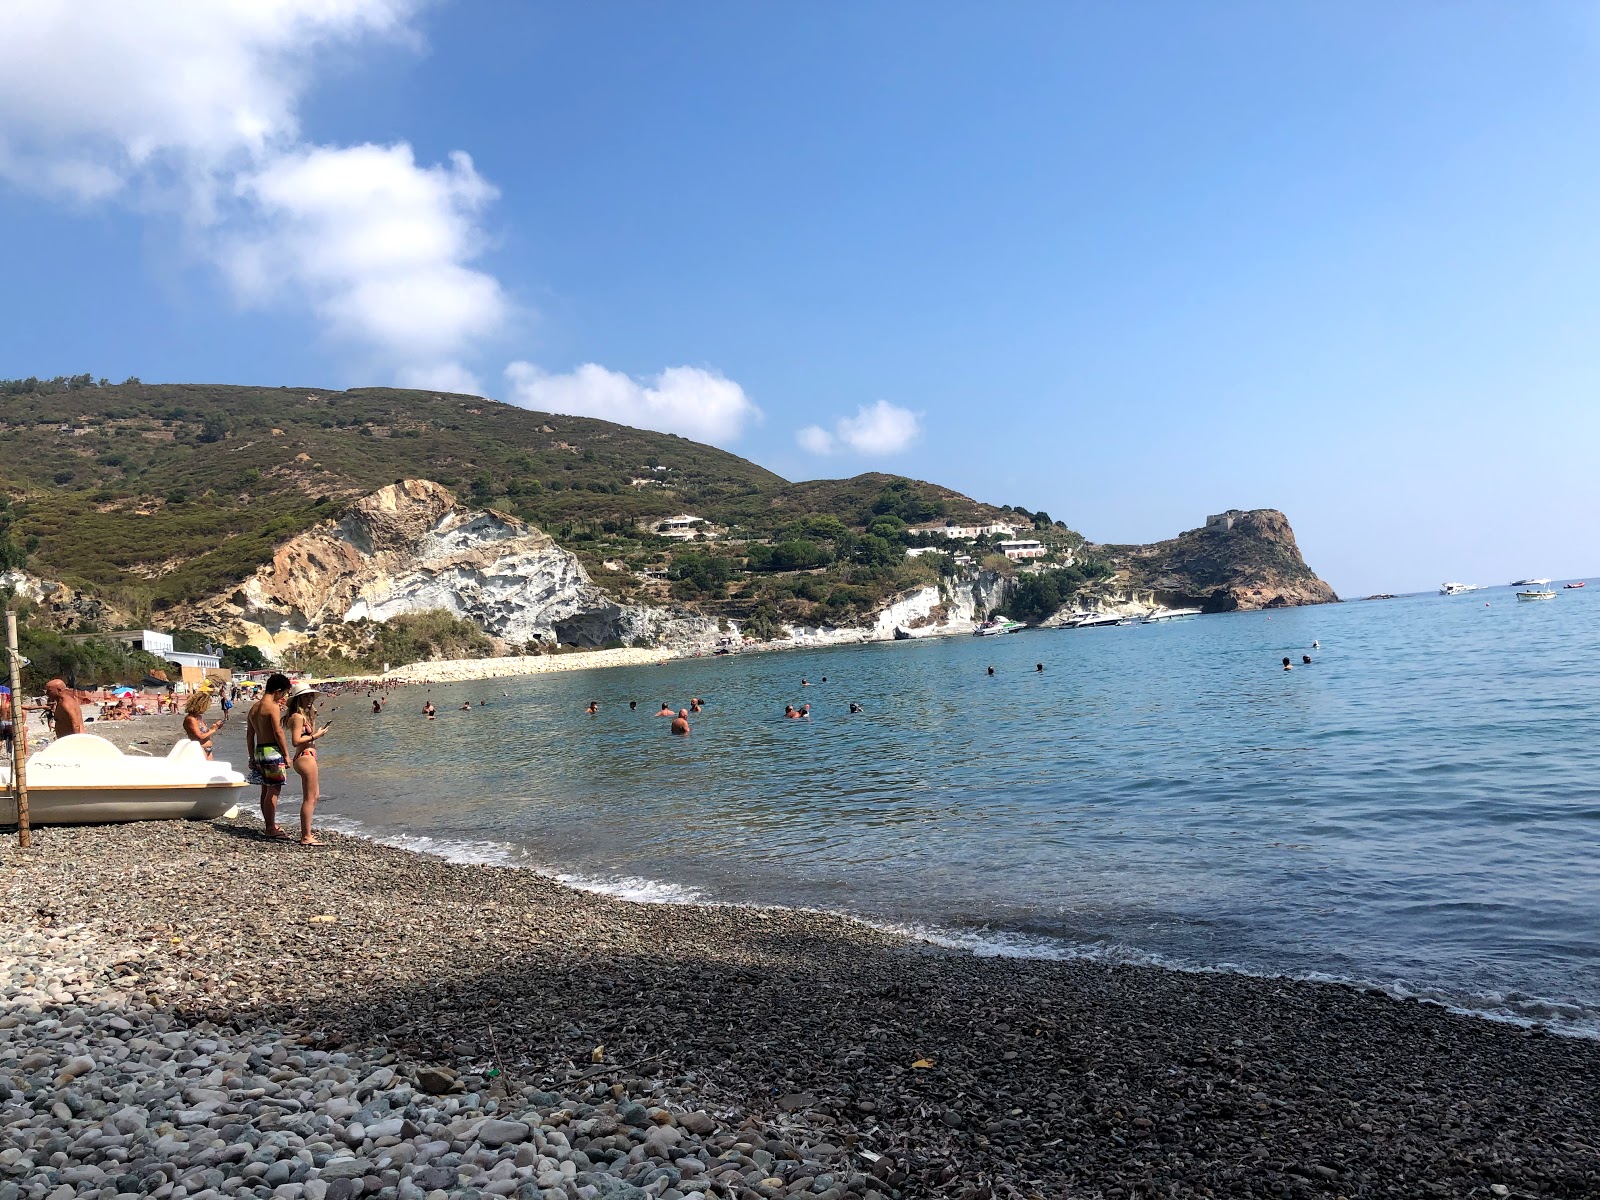 Fotografie cu Frontone beach - locul popular printre cunoscătorii de relaxare